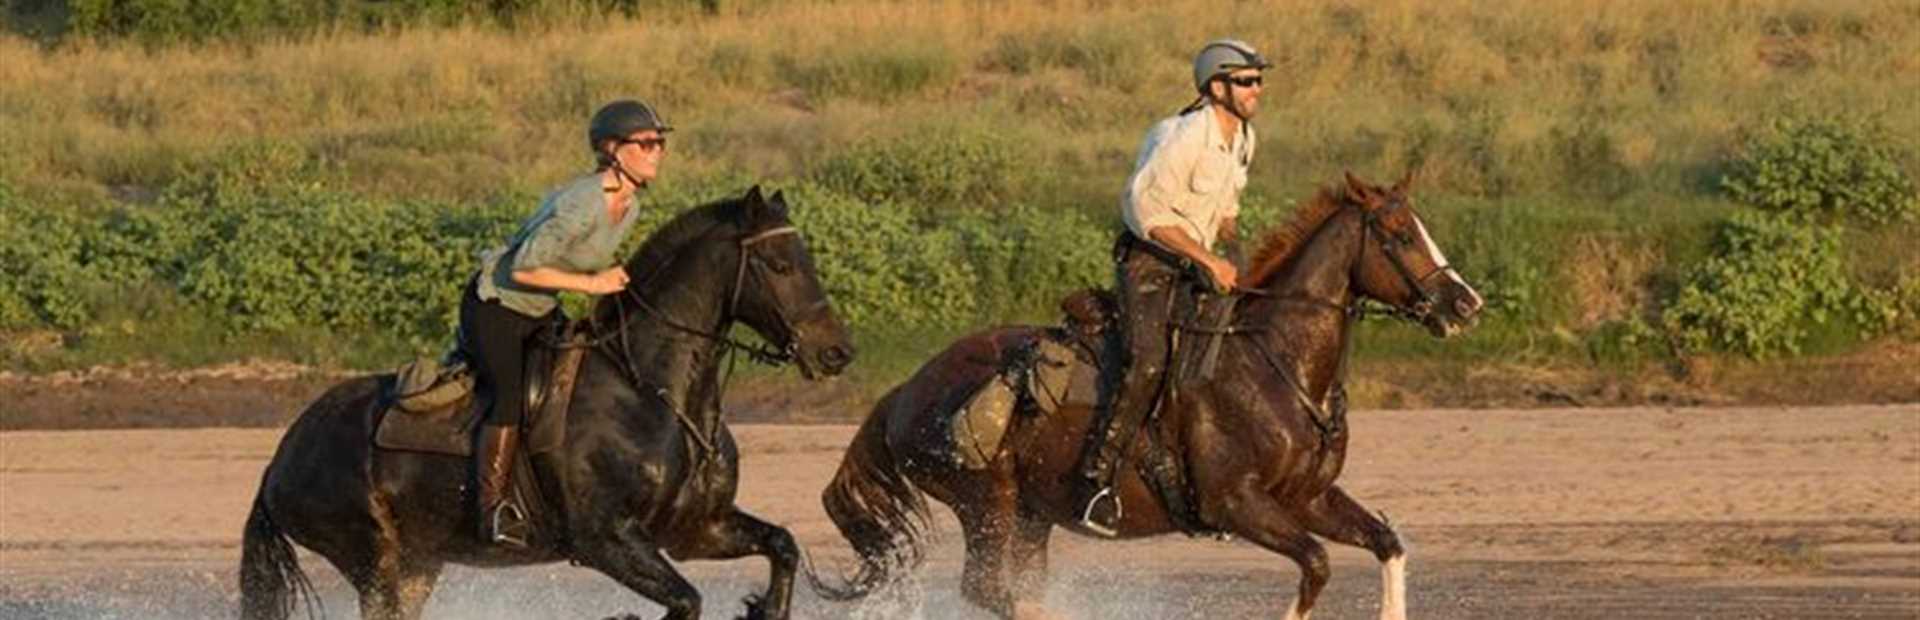 Botswana - Tuli Horse Riding Safari